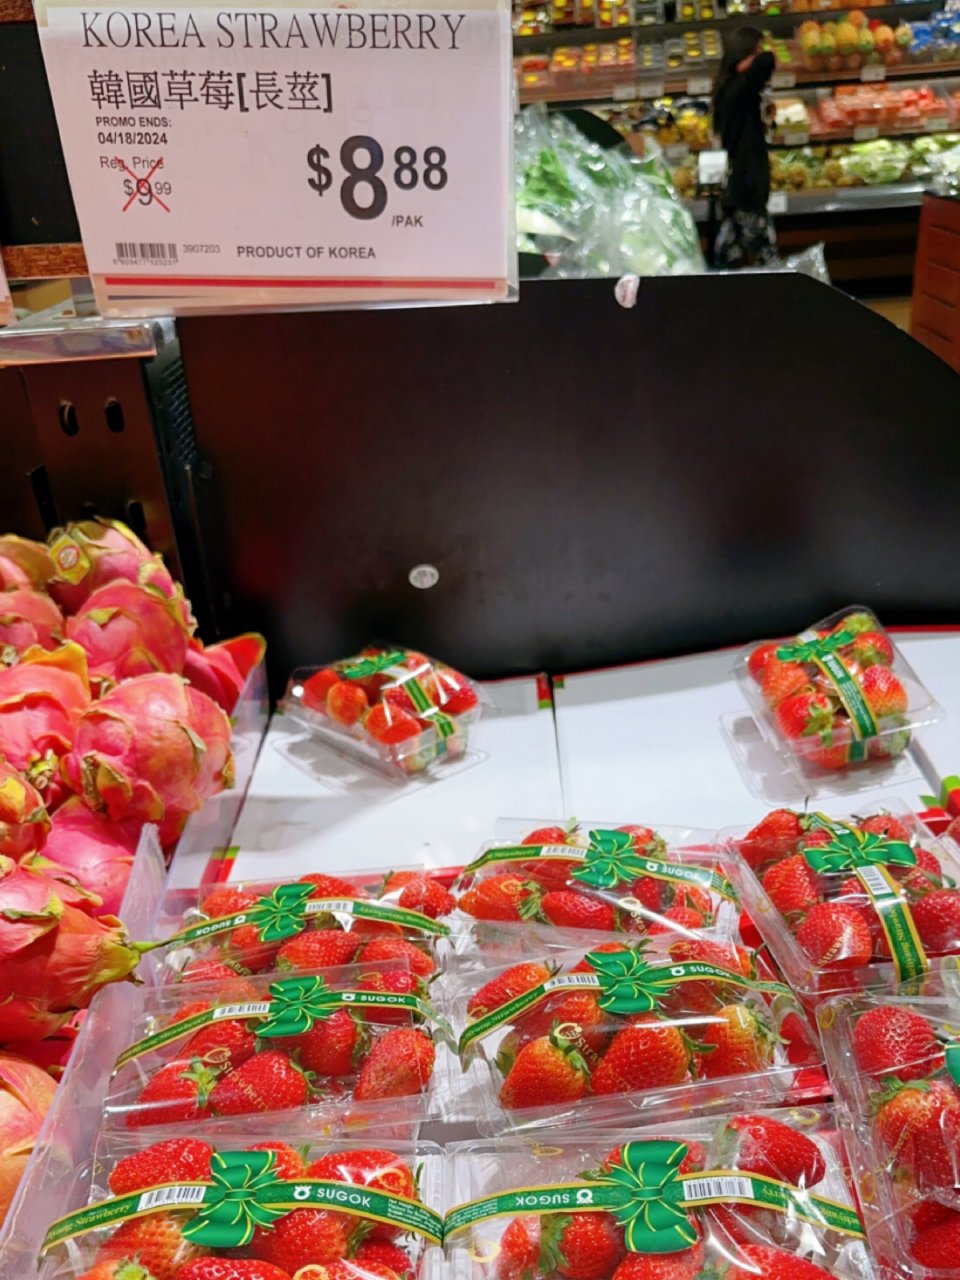 包装很好看的韩国草莓🍓...